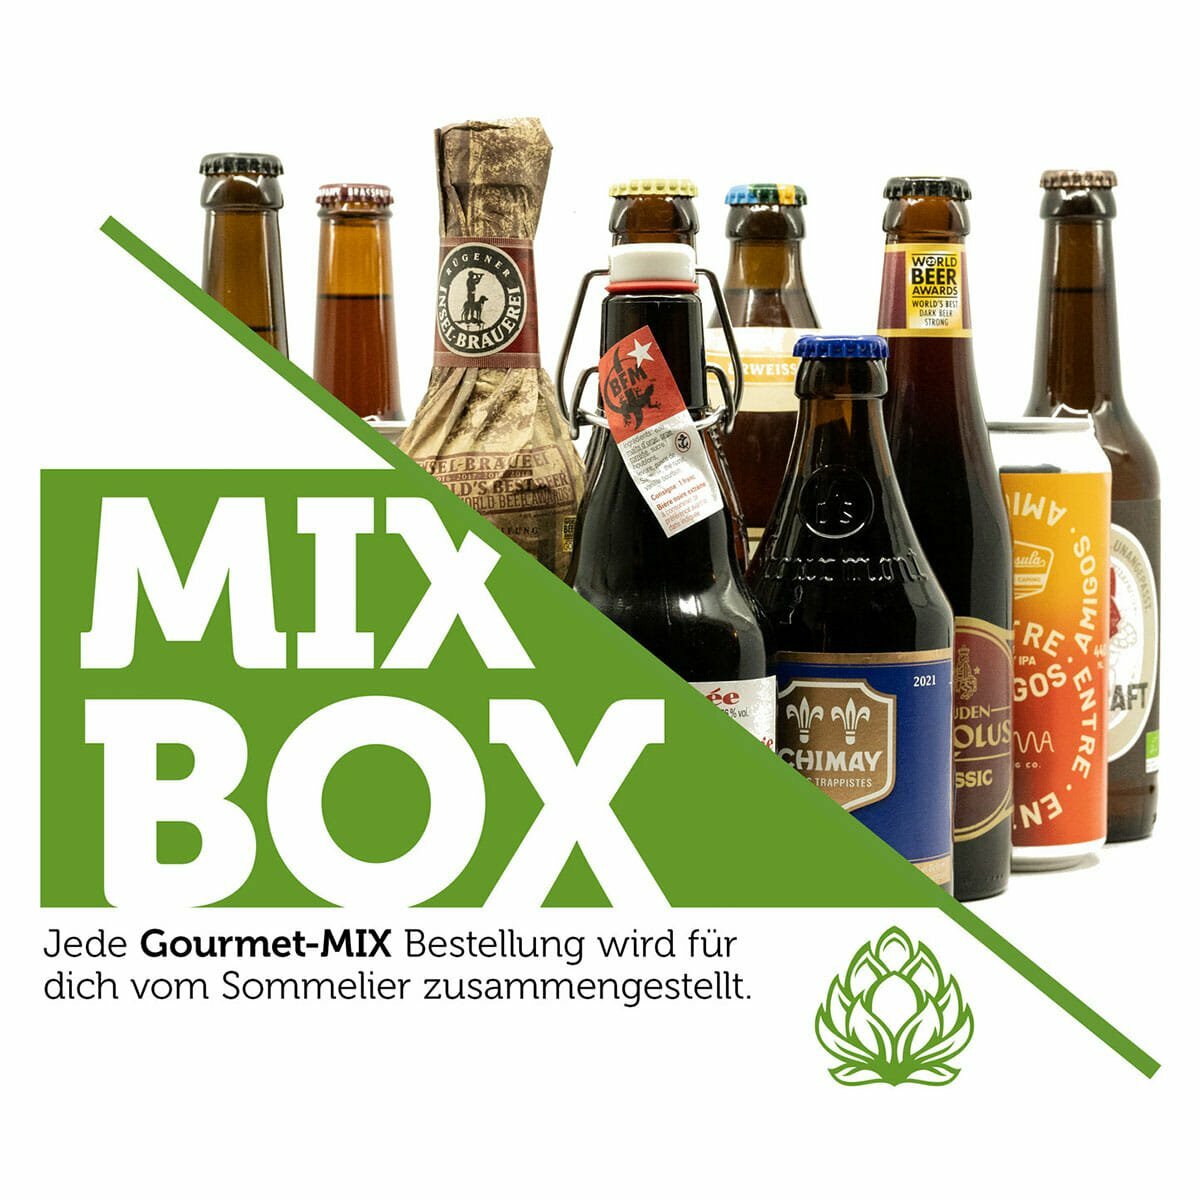 Craft Bier Mix Box